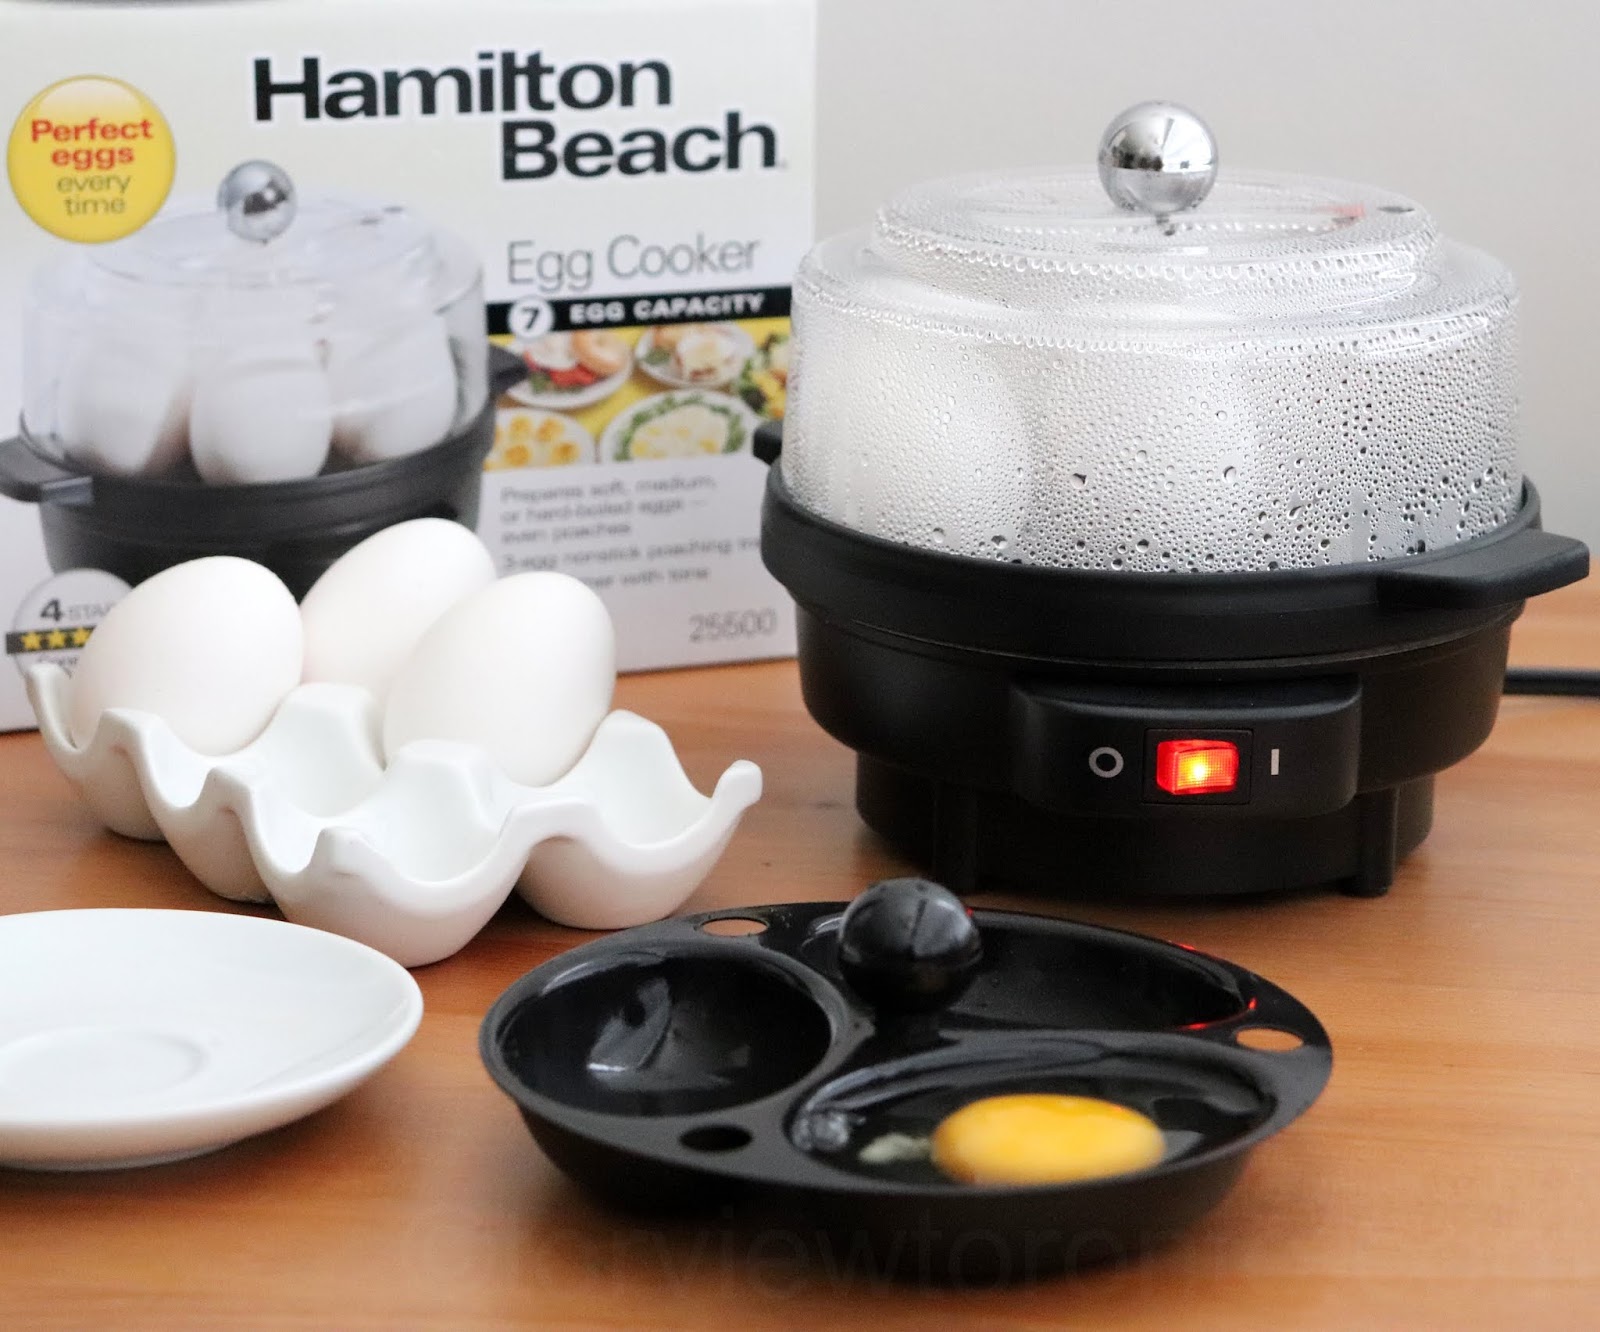 Torviewtoronto: Hamilton Beach Egg Cooker and Go Sport blender